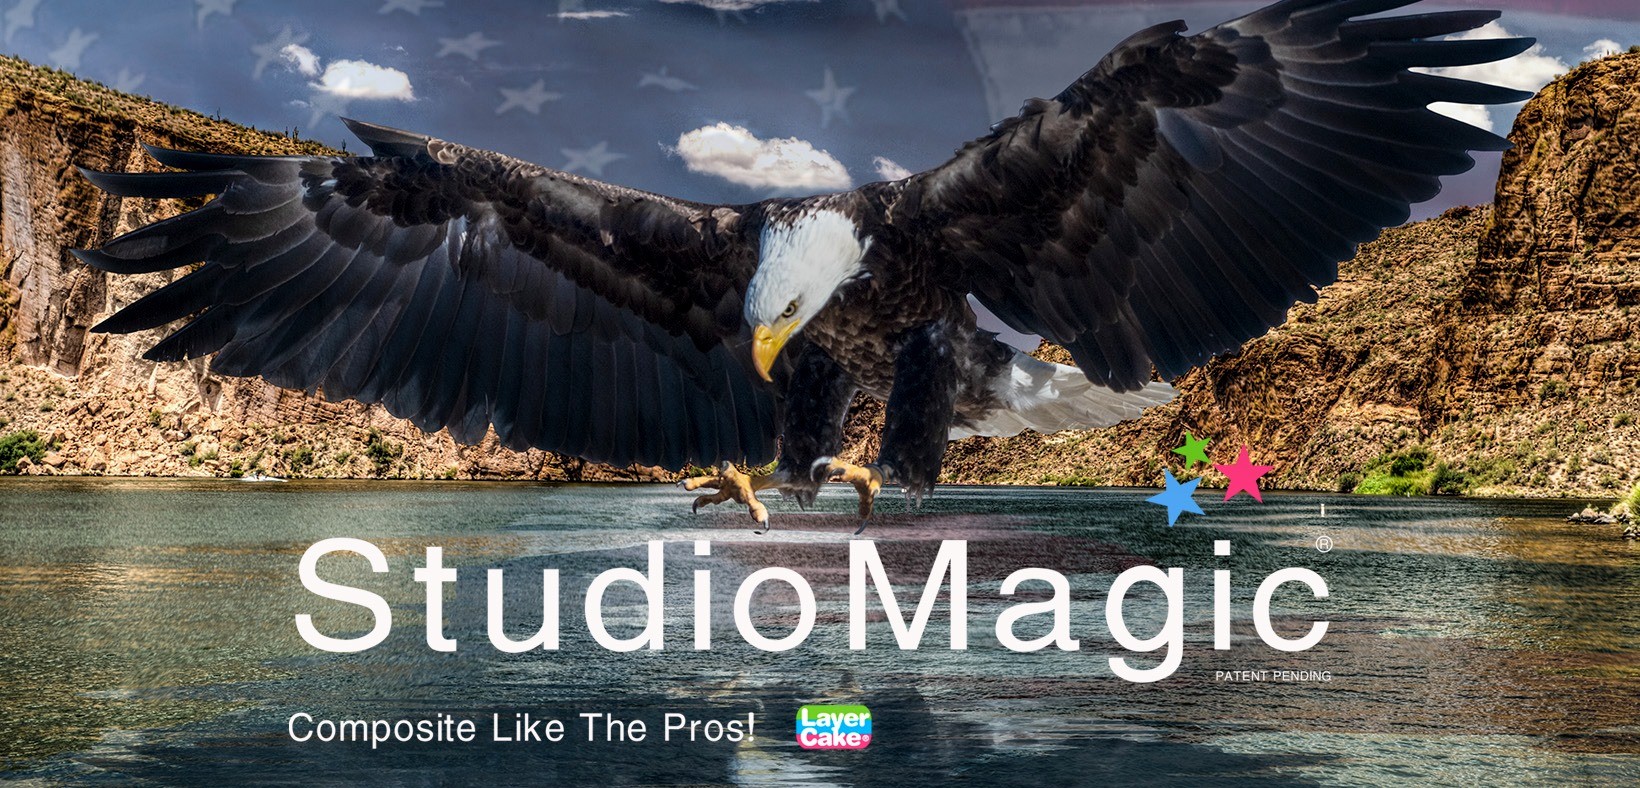 Download Photoshop Unique StudioMagic Compositing Plugin - Photoshop Tutorials Lorelei Web Design